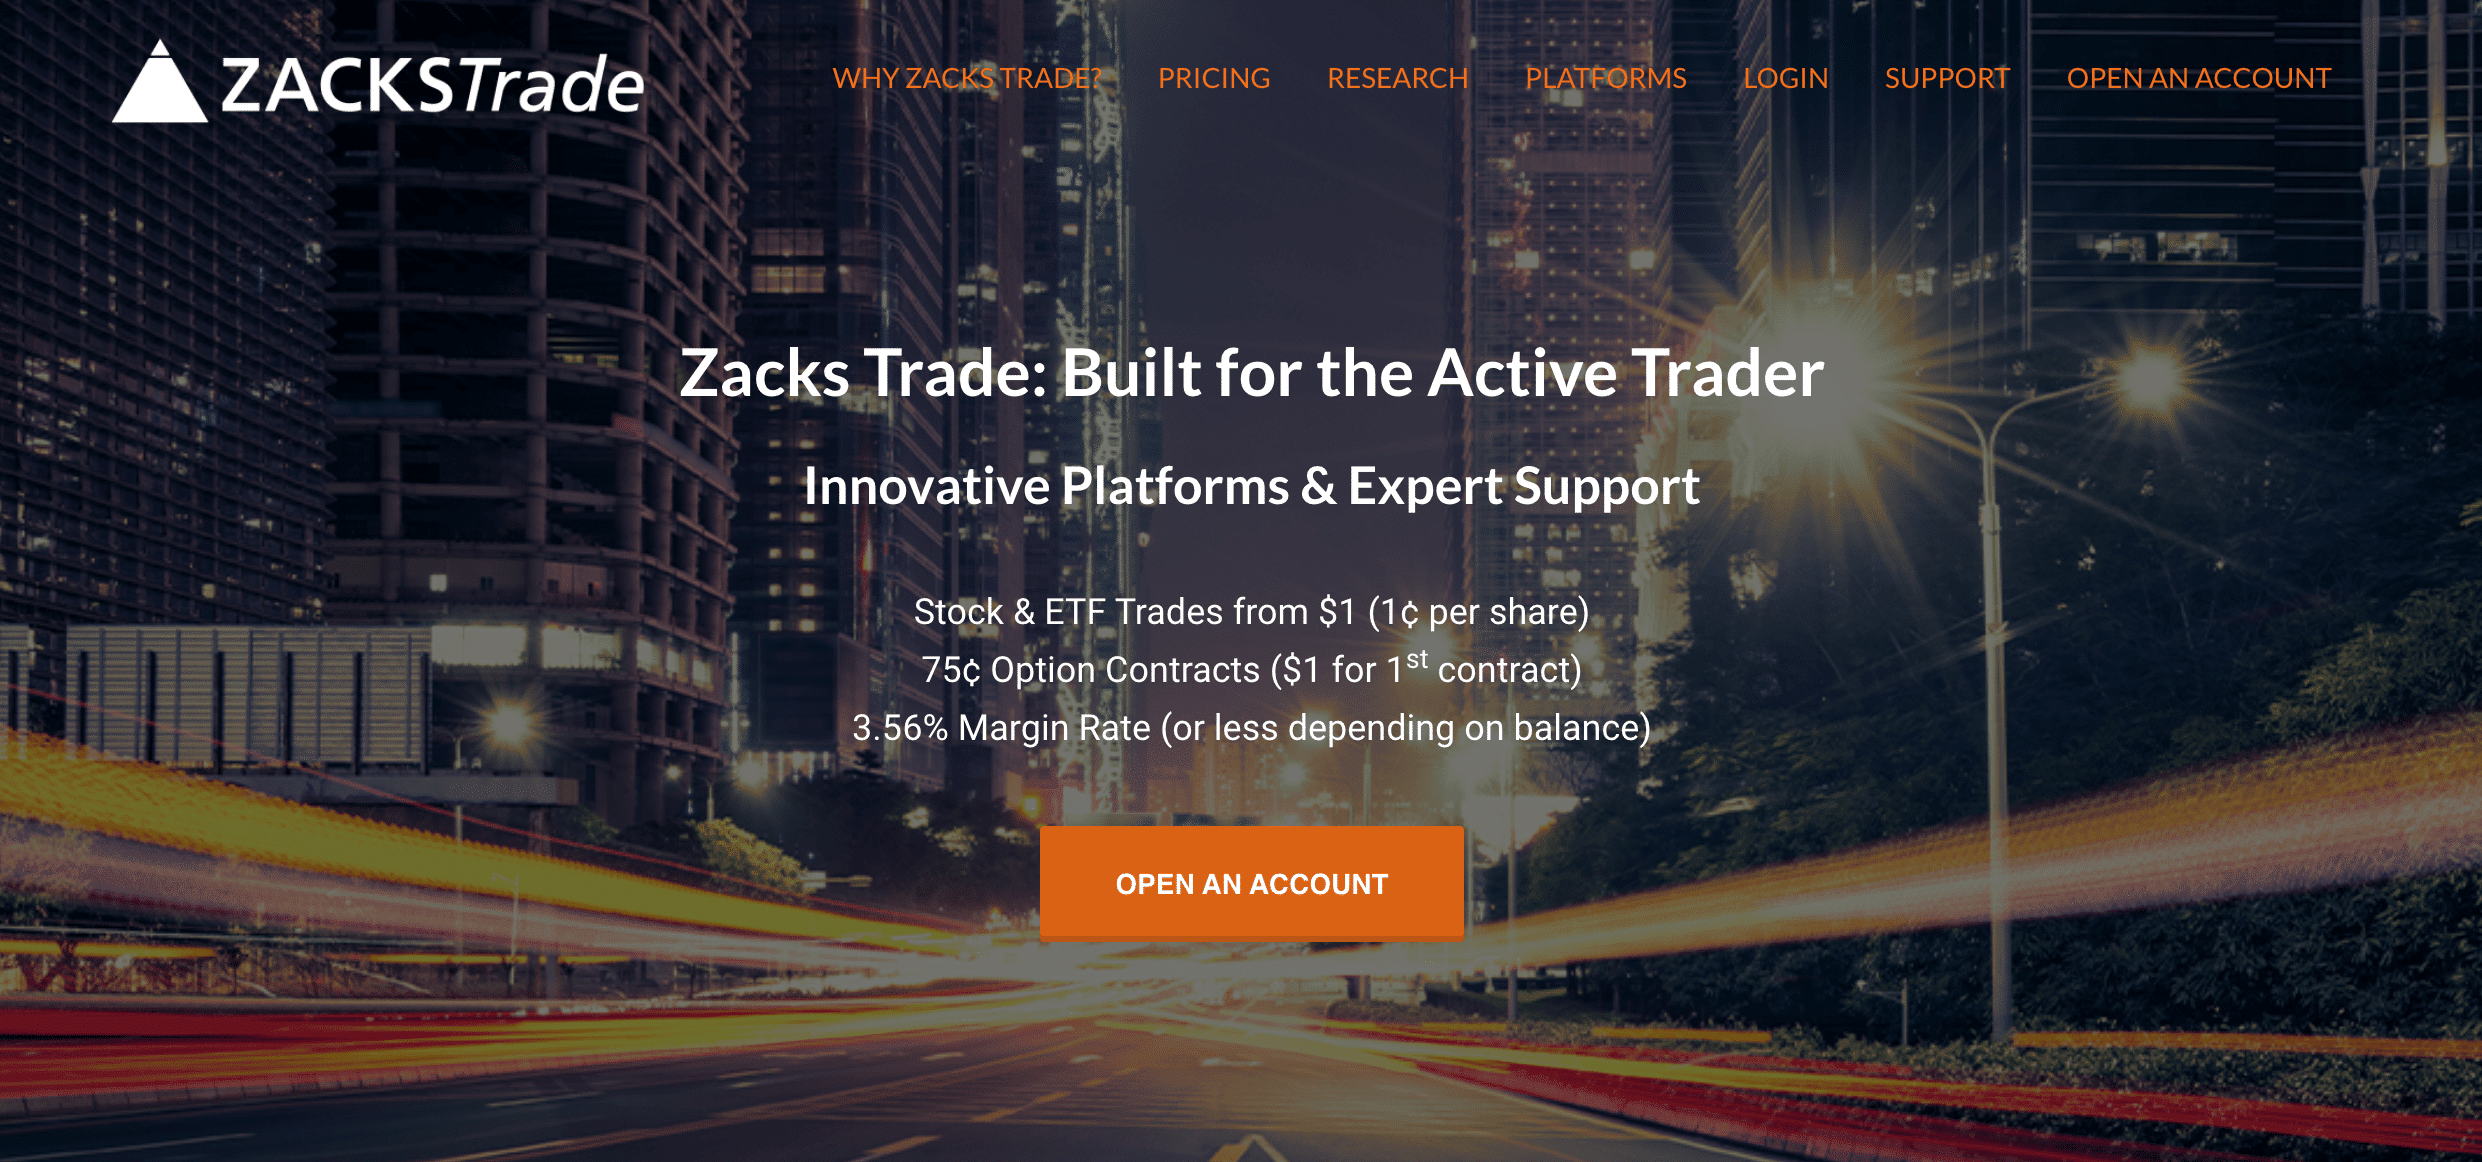 zacks trade review